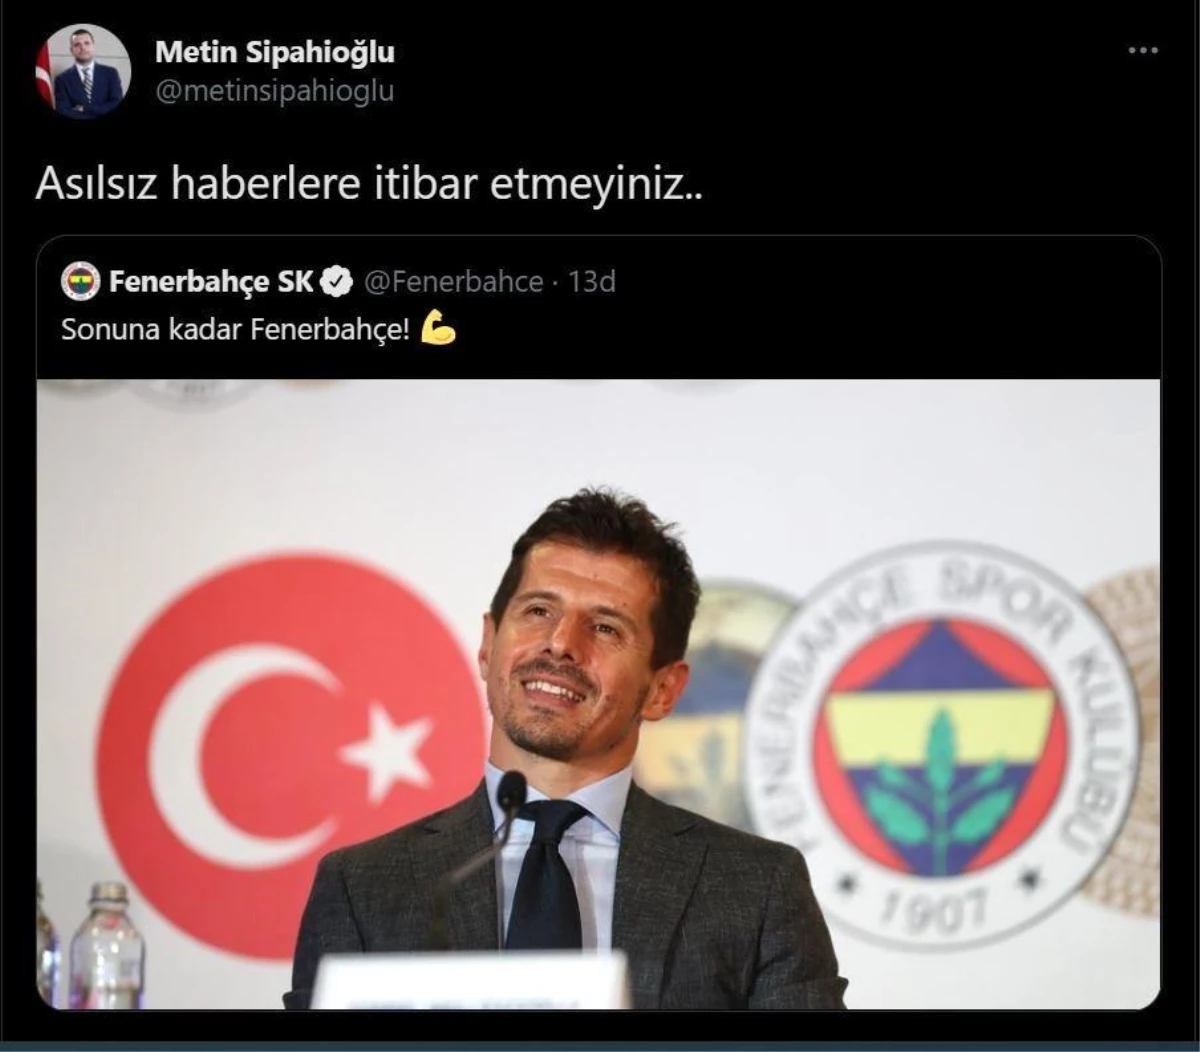 Fenerbahçe\'den Emre Belözoğlu açıklaması: "Asılsız haberlere itibar etmeyiniz"